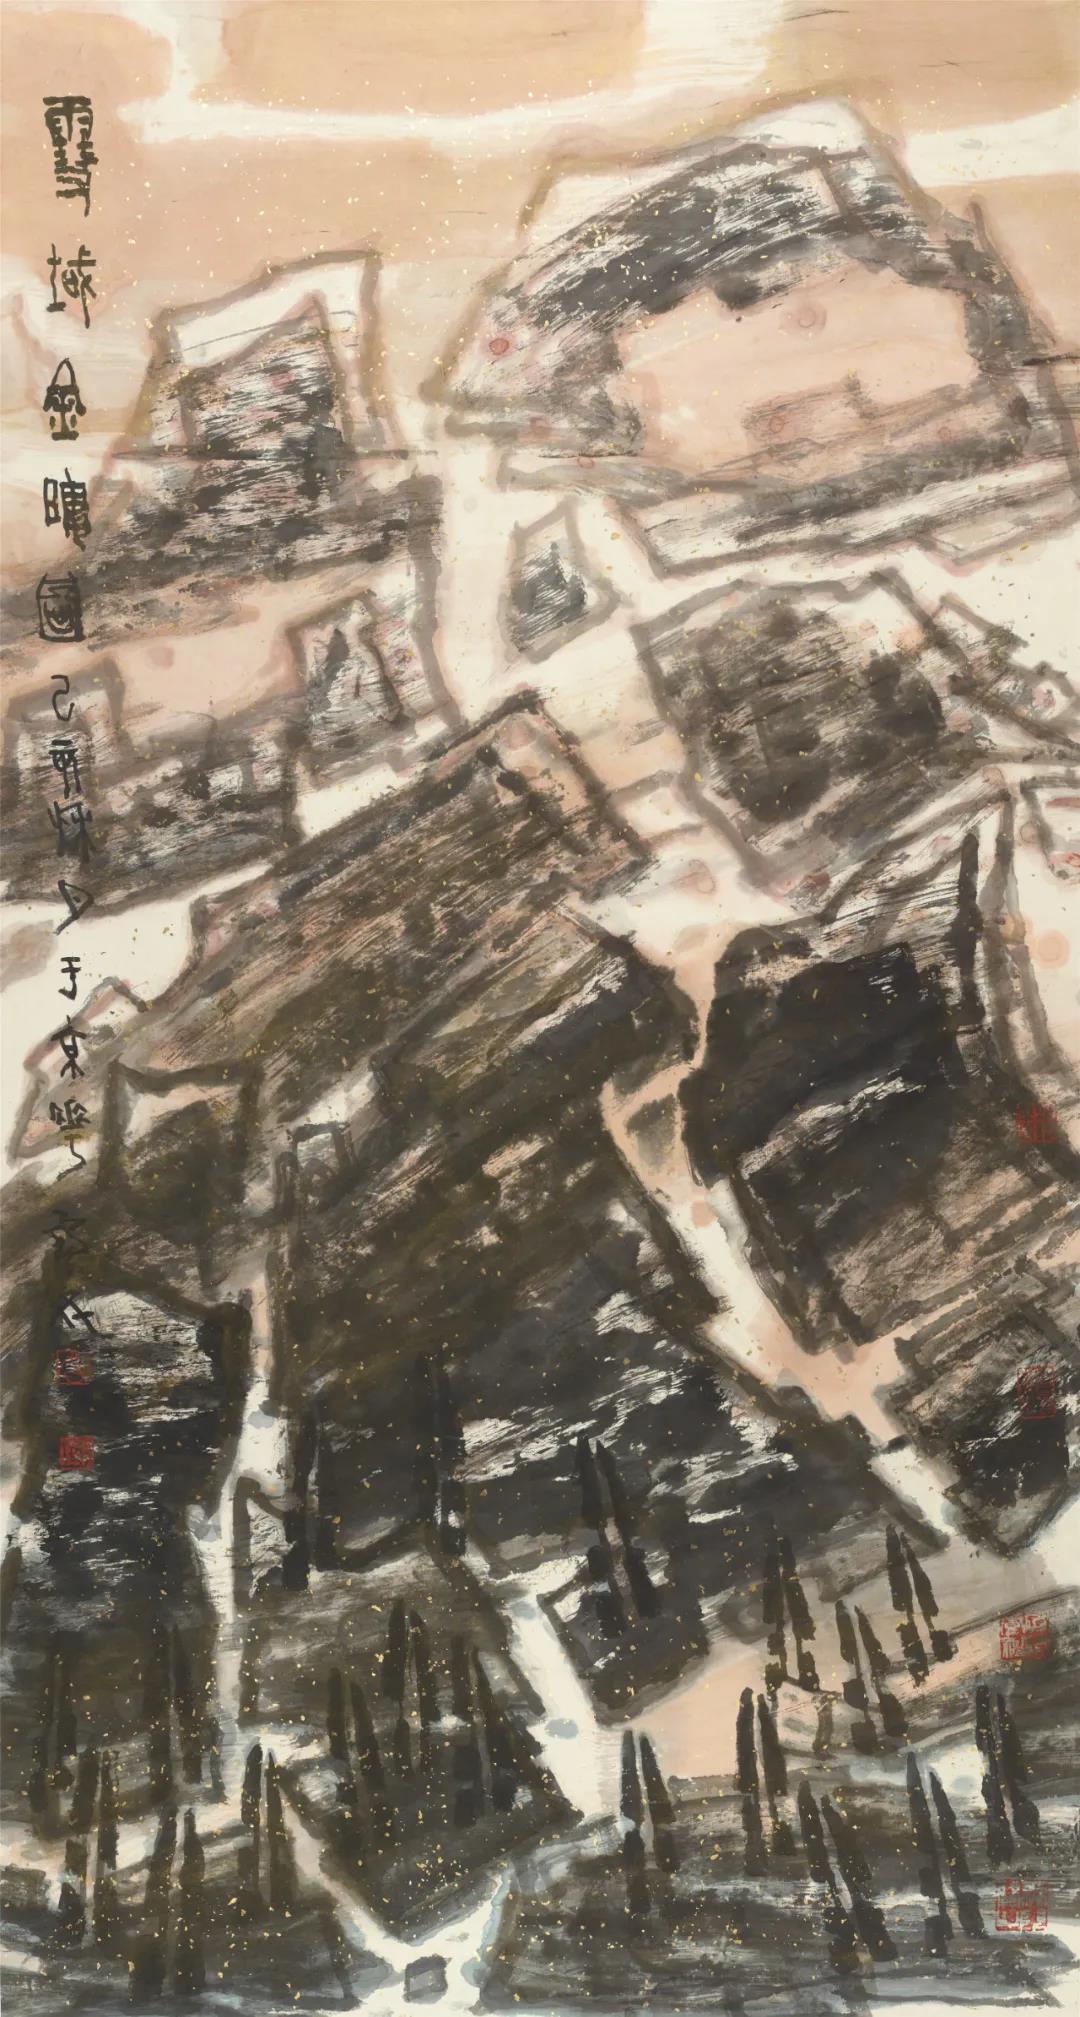 李宝林 雪域金晖图 纸本设色 173.5cm×93cm  2019年